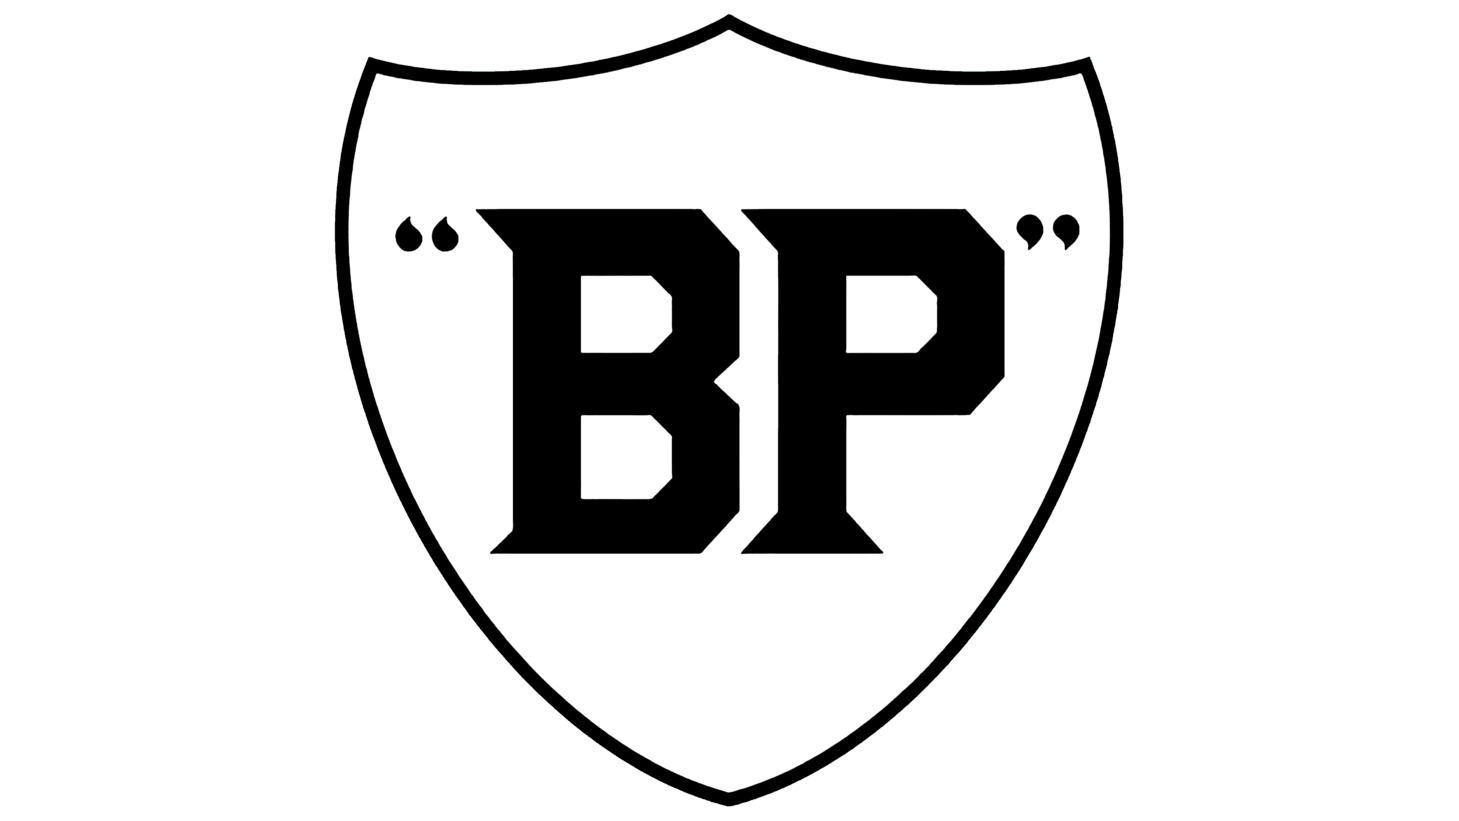 Bp sign 1930 1947